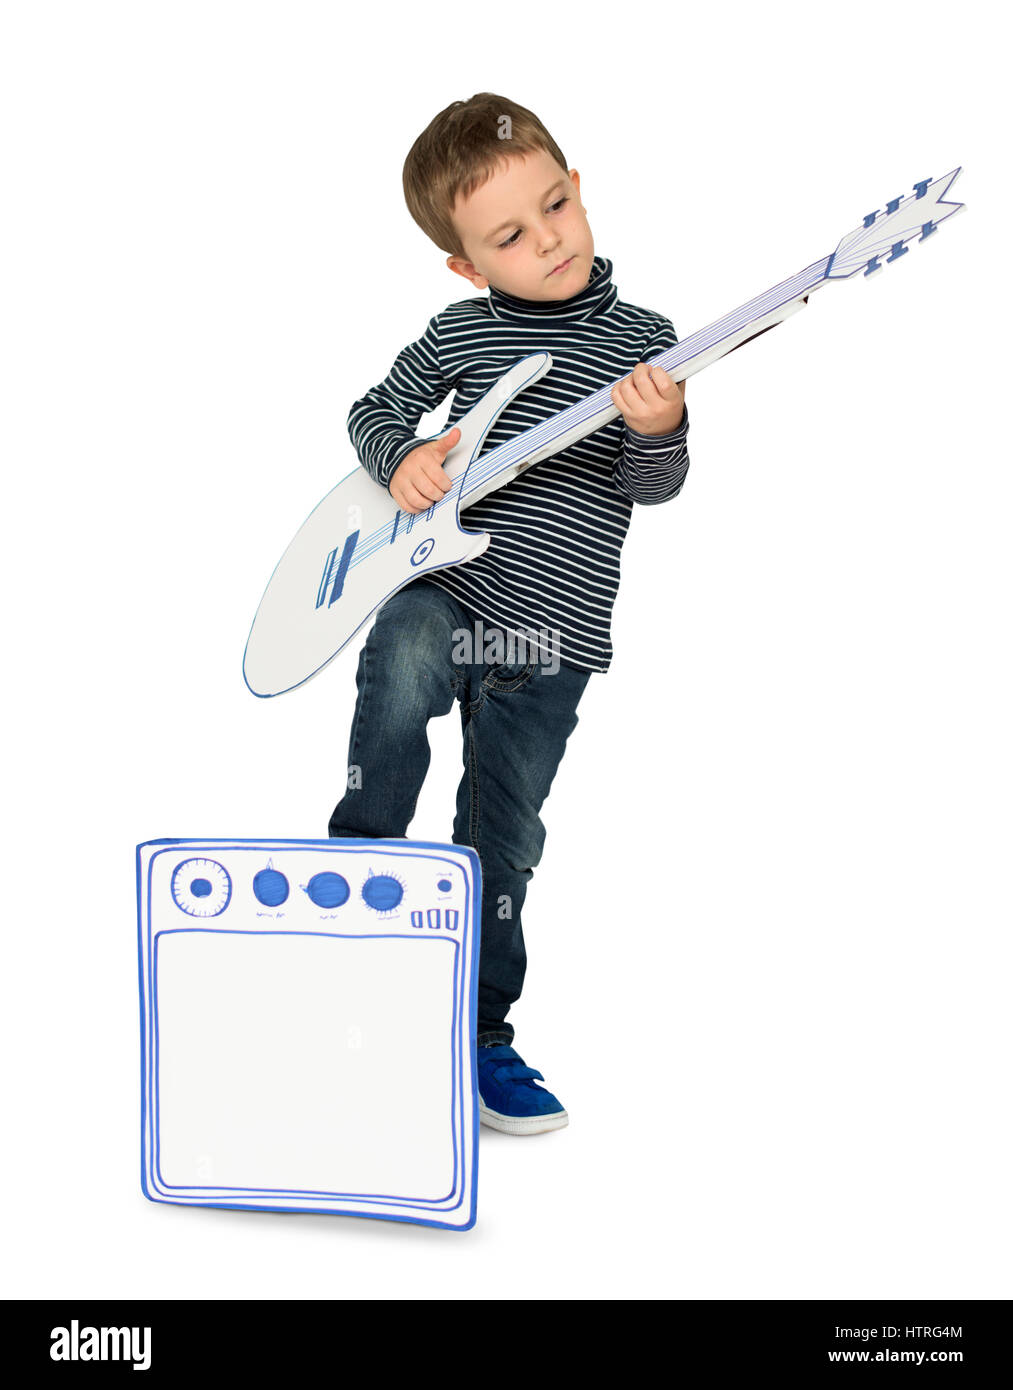 Bambino che suona la chitarra Immagini senza sfondo e Foto Stock ritagliate  - Pagina 2 - Alamy